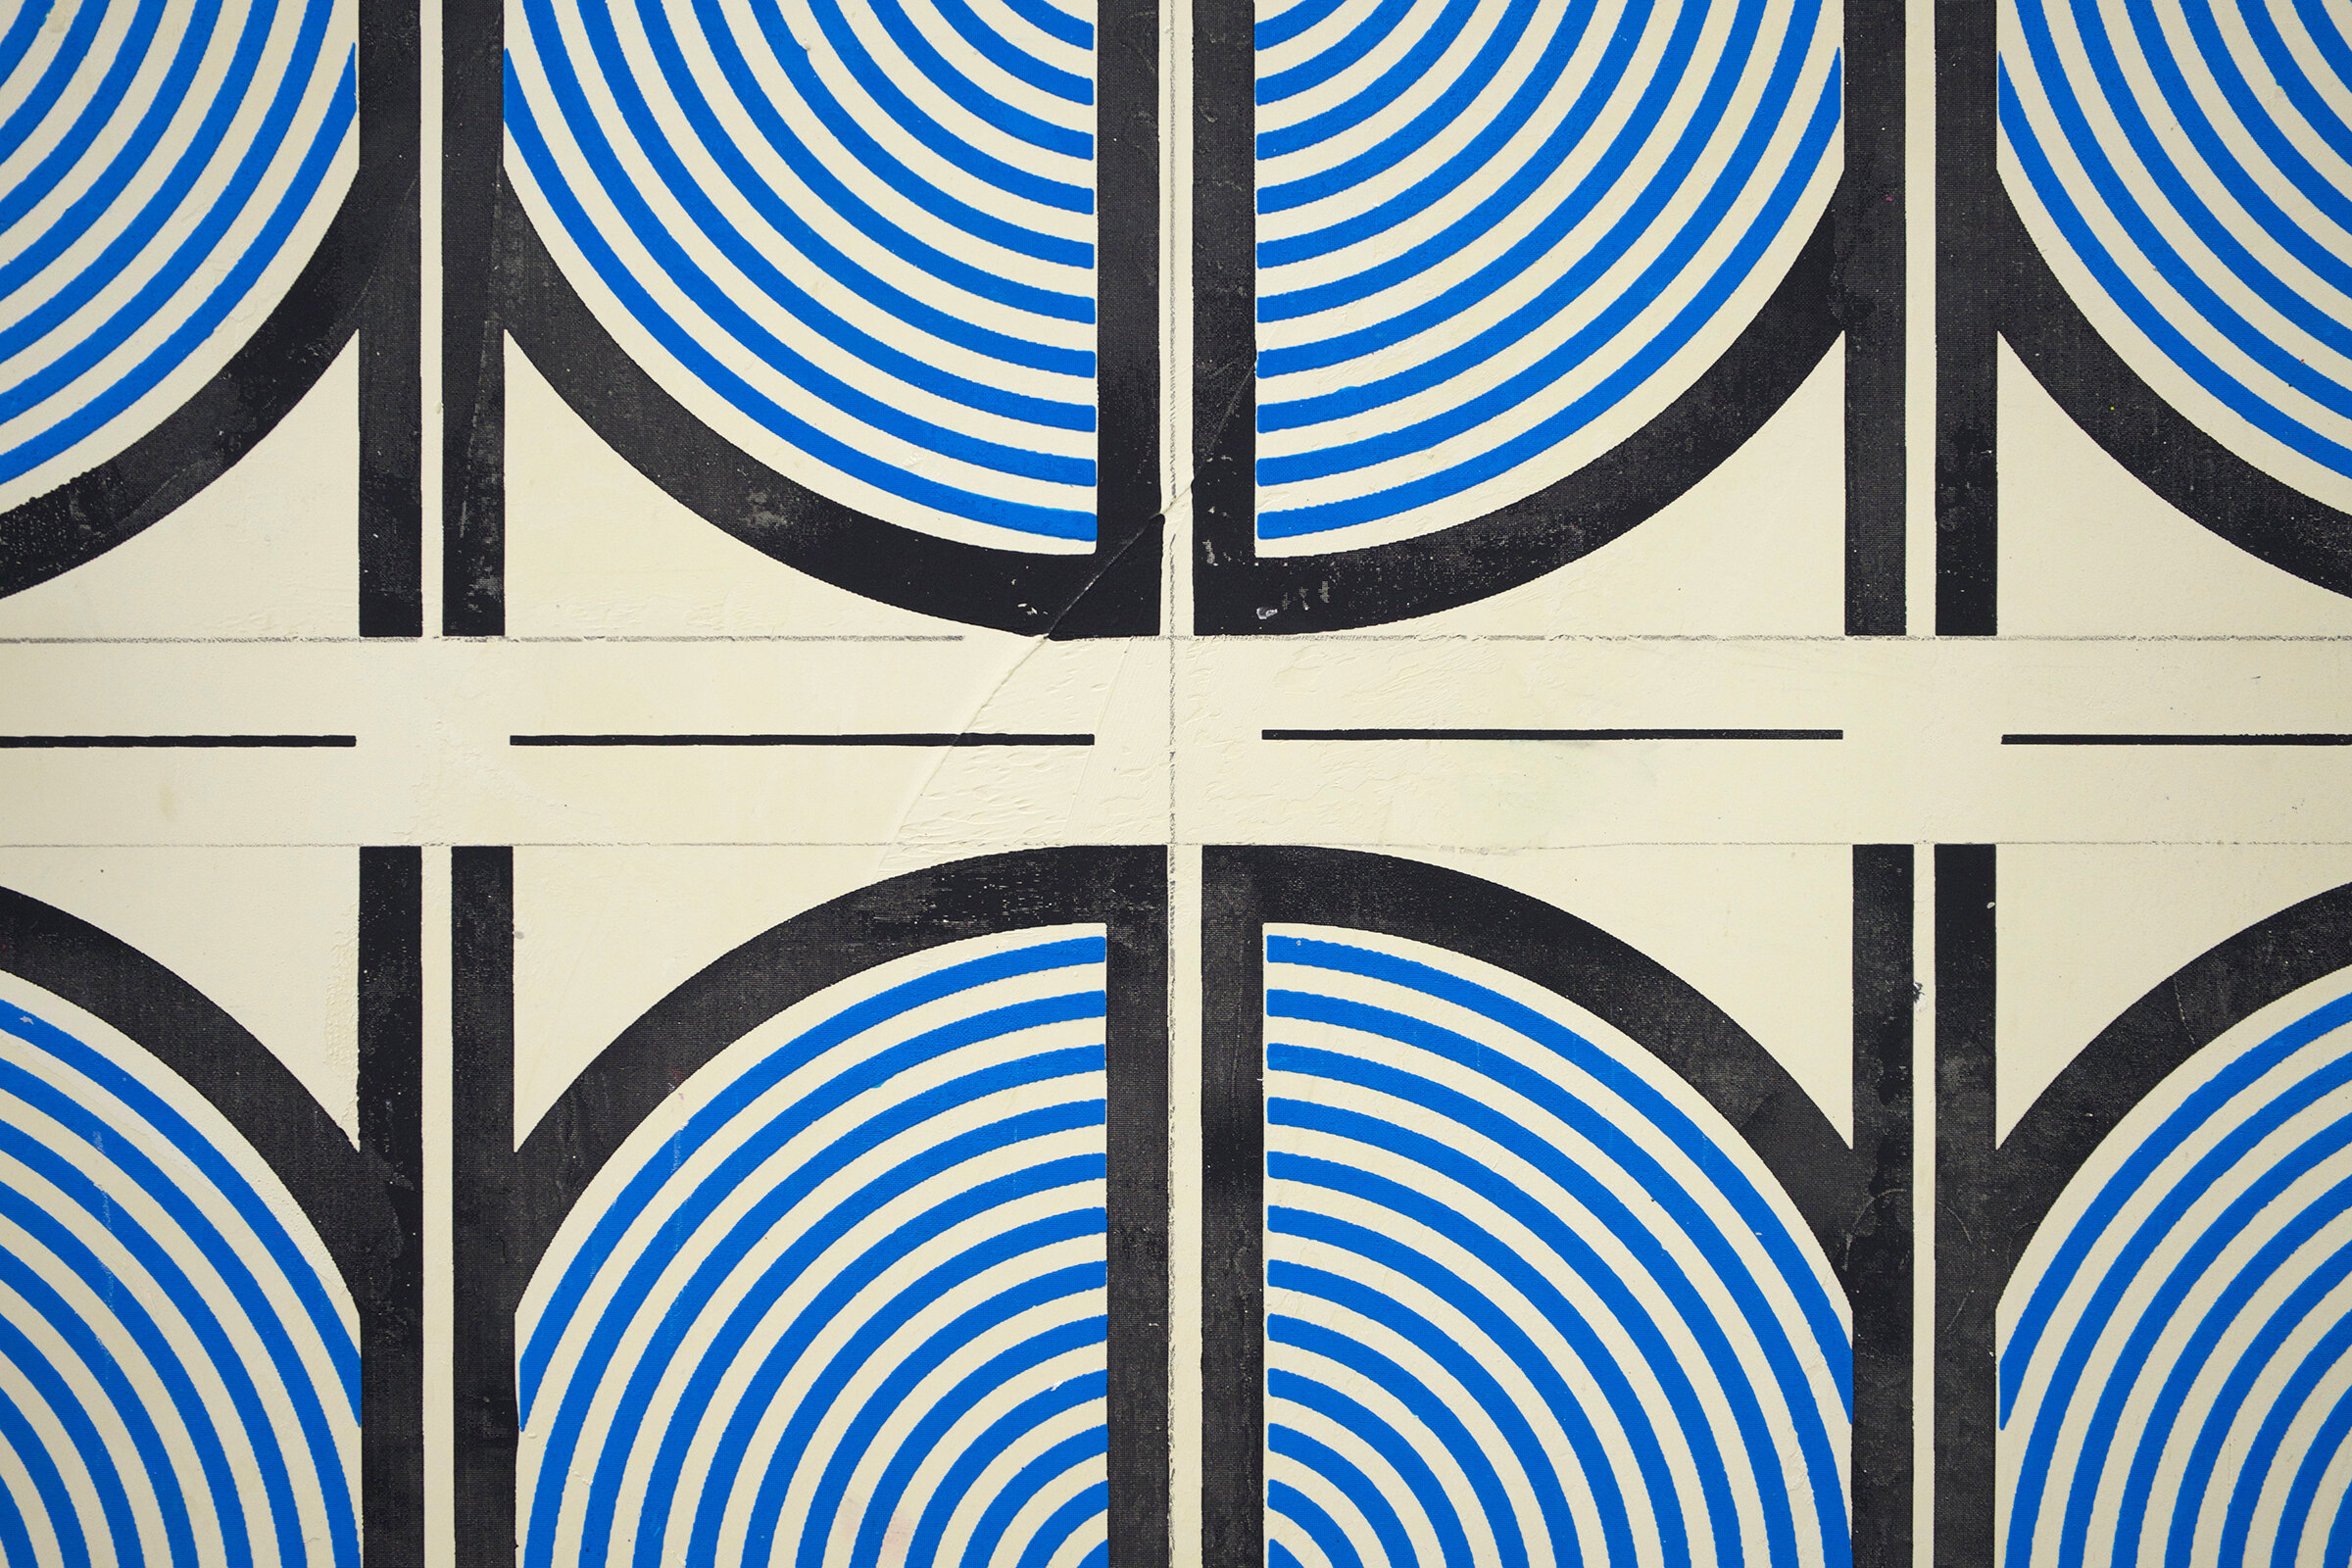  ELISE FERGUSON   (detail)  Clamp Morris , 2019 pigmented plaster on paper 24.75" x 17.25" (framed) 